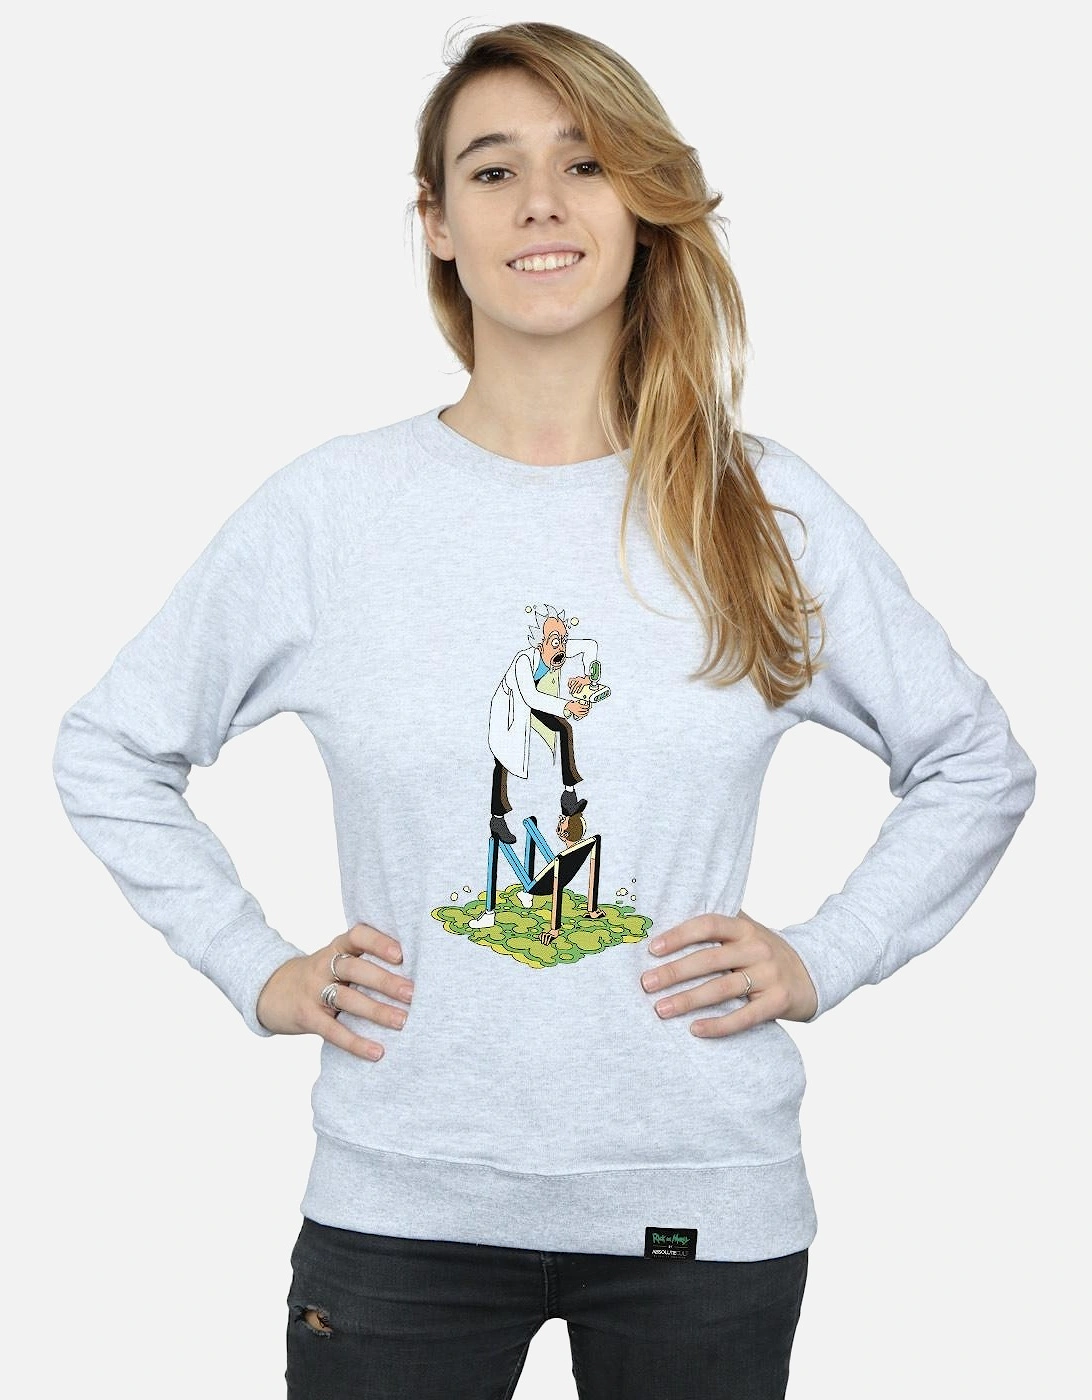 Womens/Ladies Stylised Characters Sweatshirt